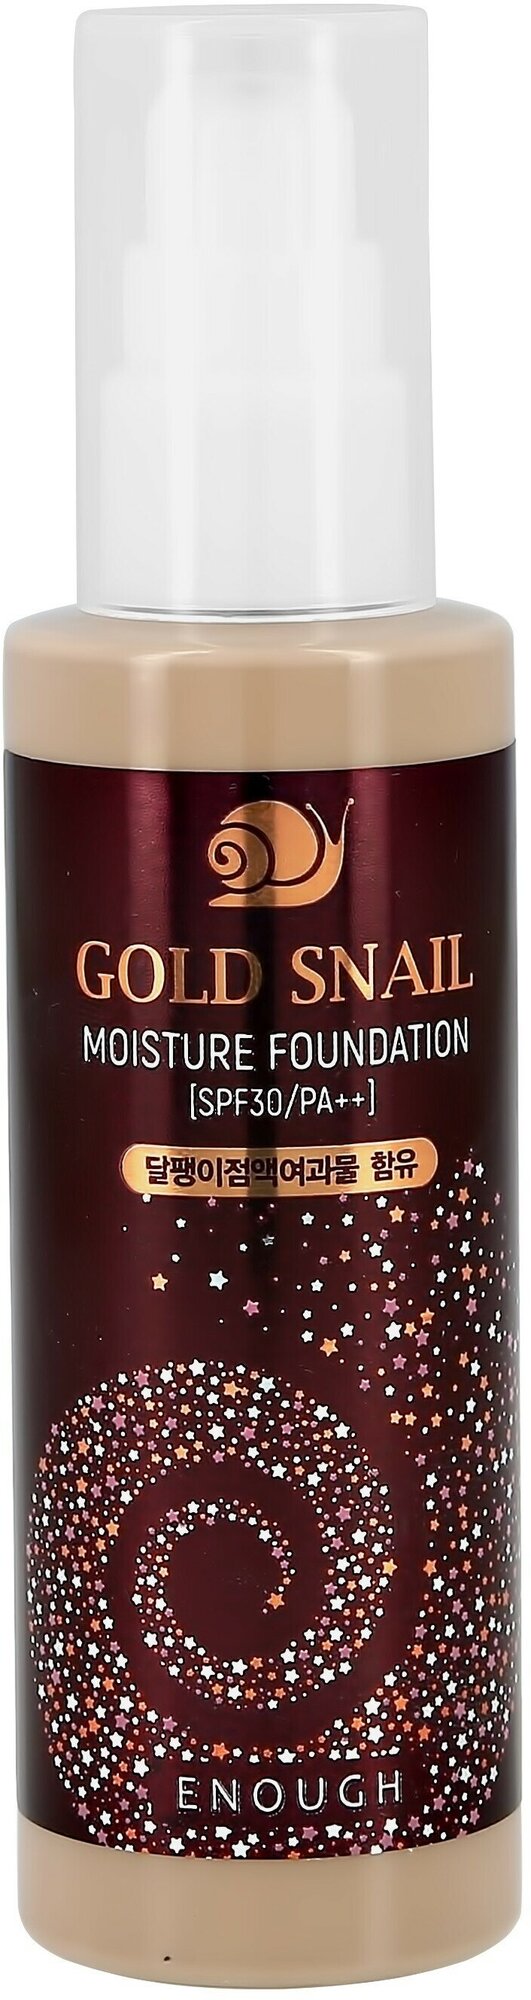 Enough Тональный крем Gold Snail Moisture Foundation, SPF 30, 100 мл/150 г, оттенок: 13 light beige